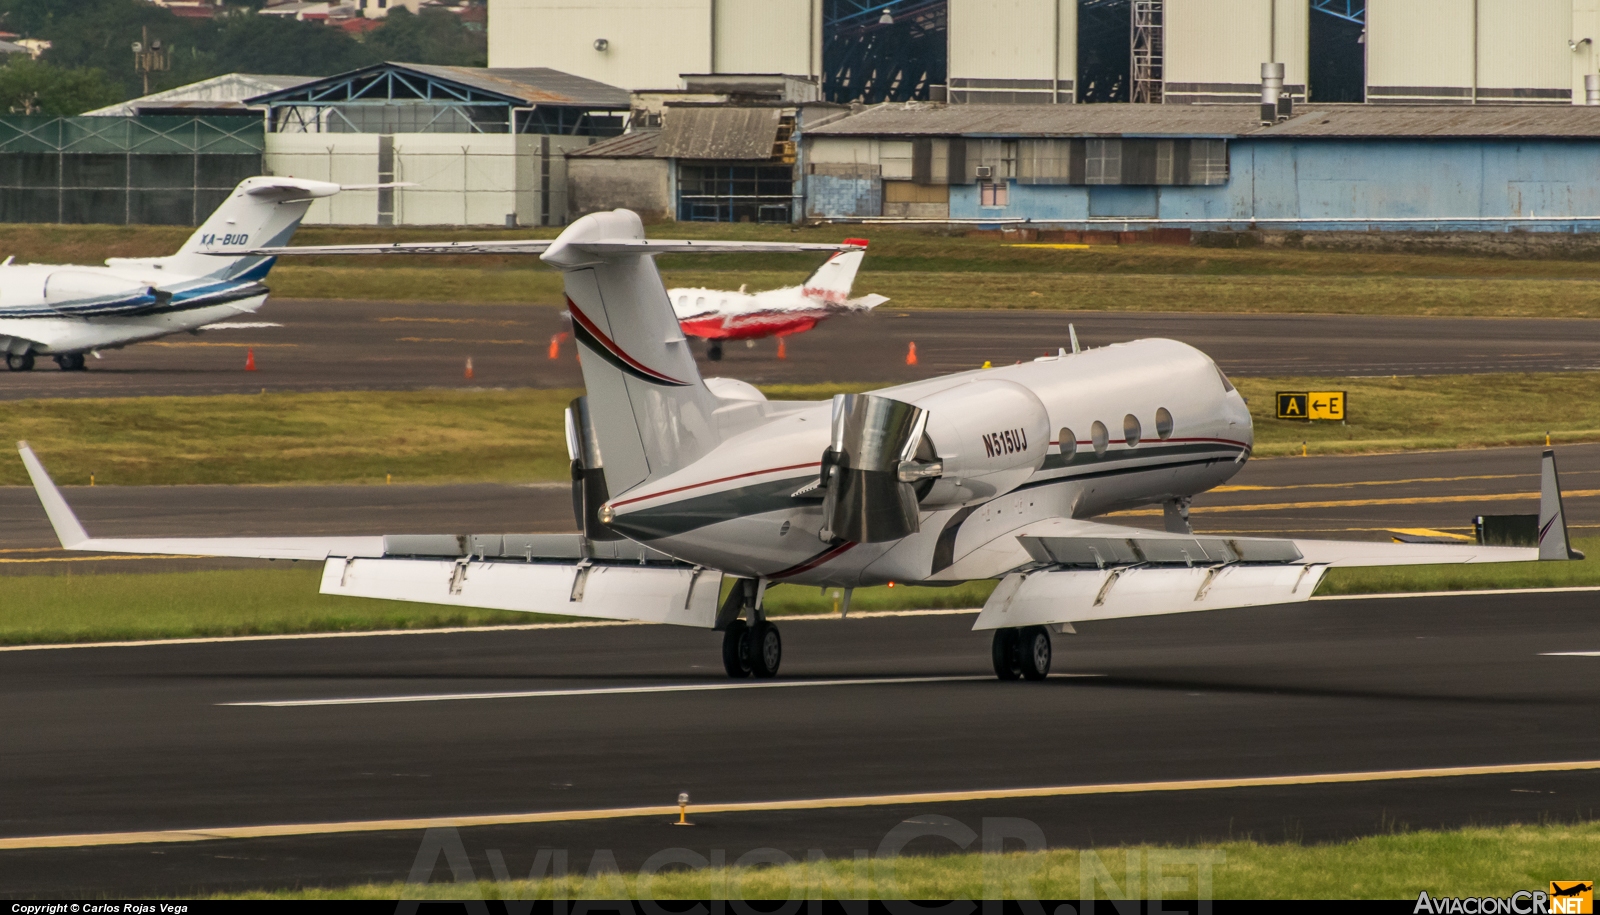 N515UJ - Gulfstream Aerospace G-IV Gulfstream IV - Privado